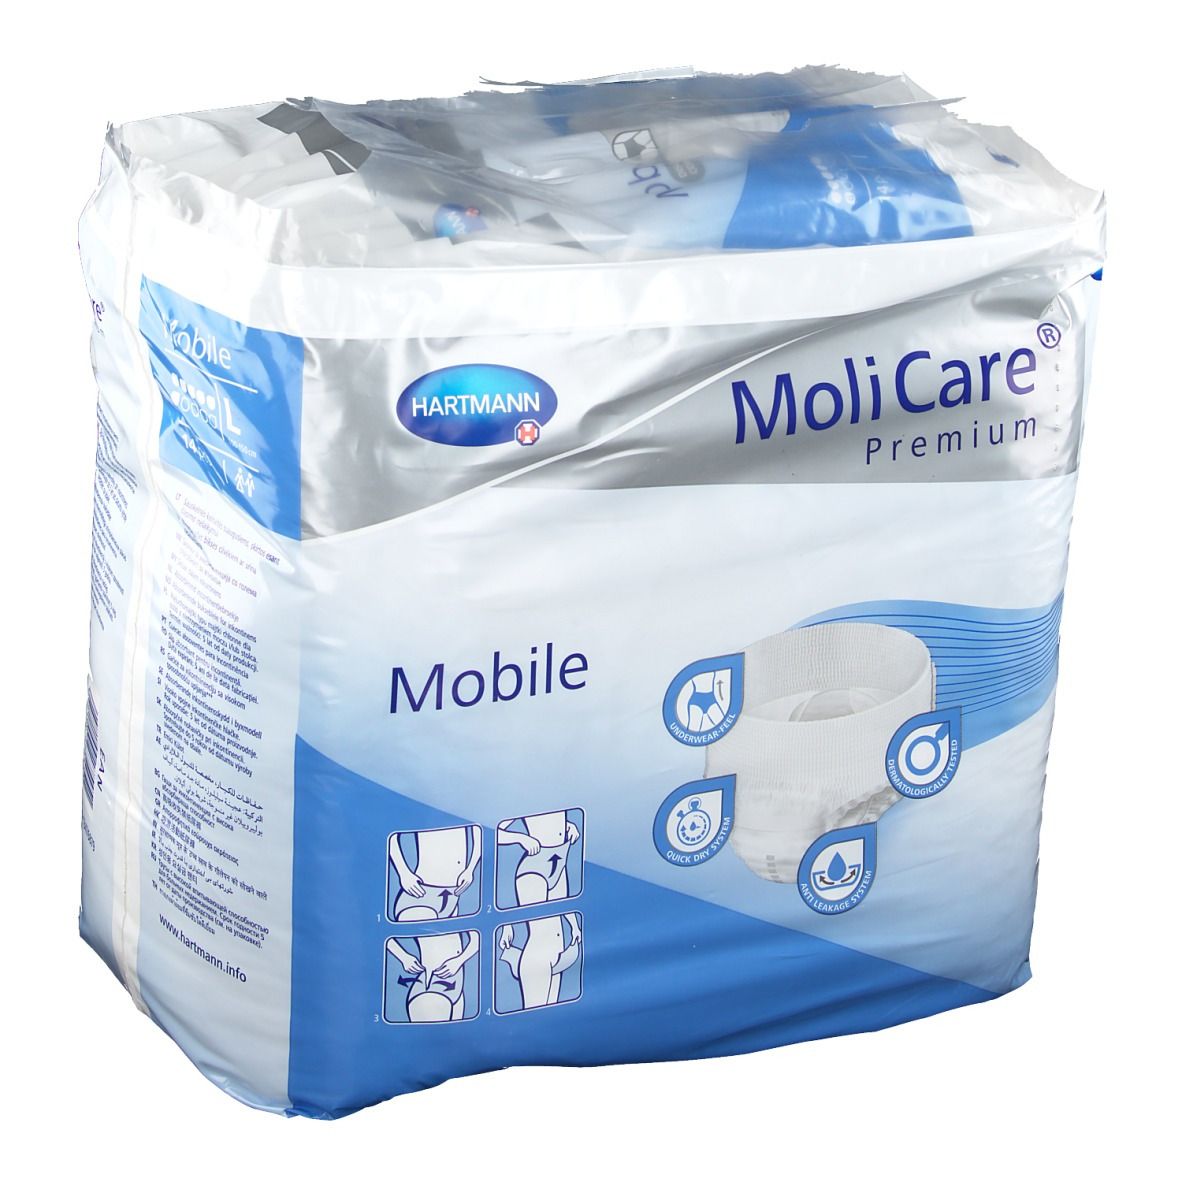 MoliCare® Premium Mobile 6 Tropfen Gr. L